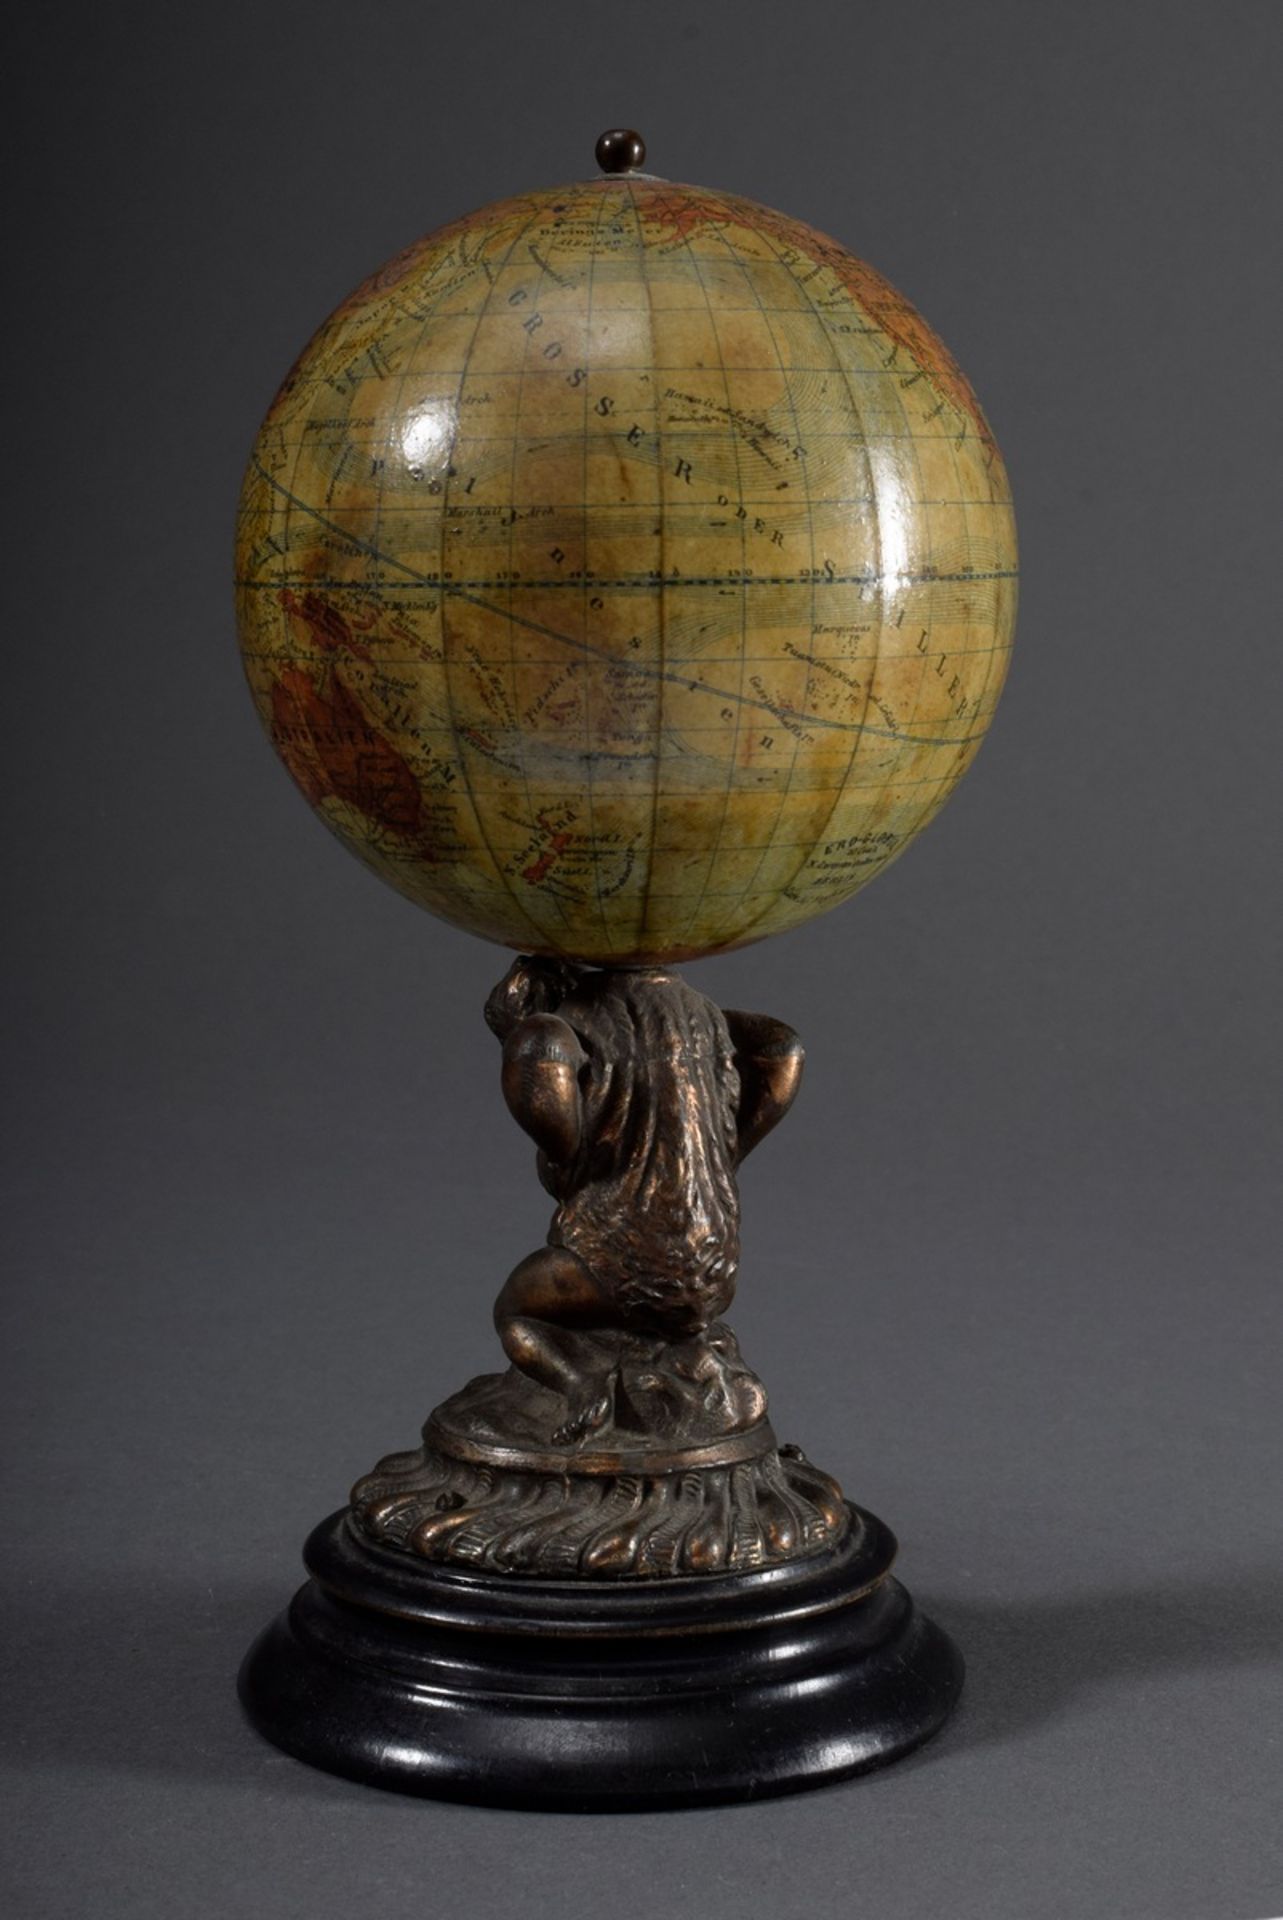 Kleiner Globus von Atlas getragen, Metall, Pappe mit coloriertem Papier, bez.: - Bild 2 aus 6